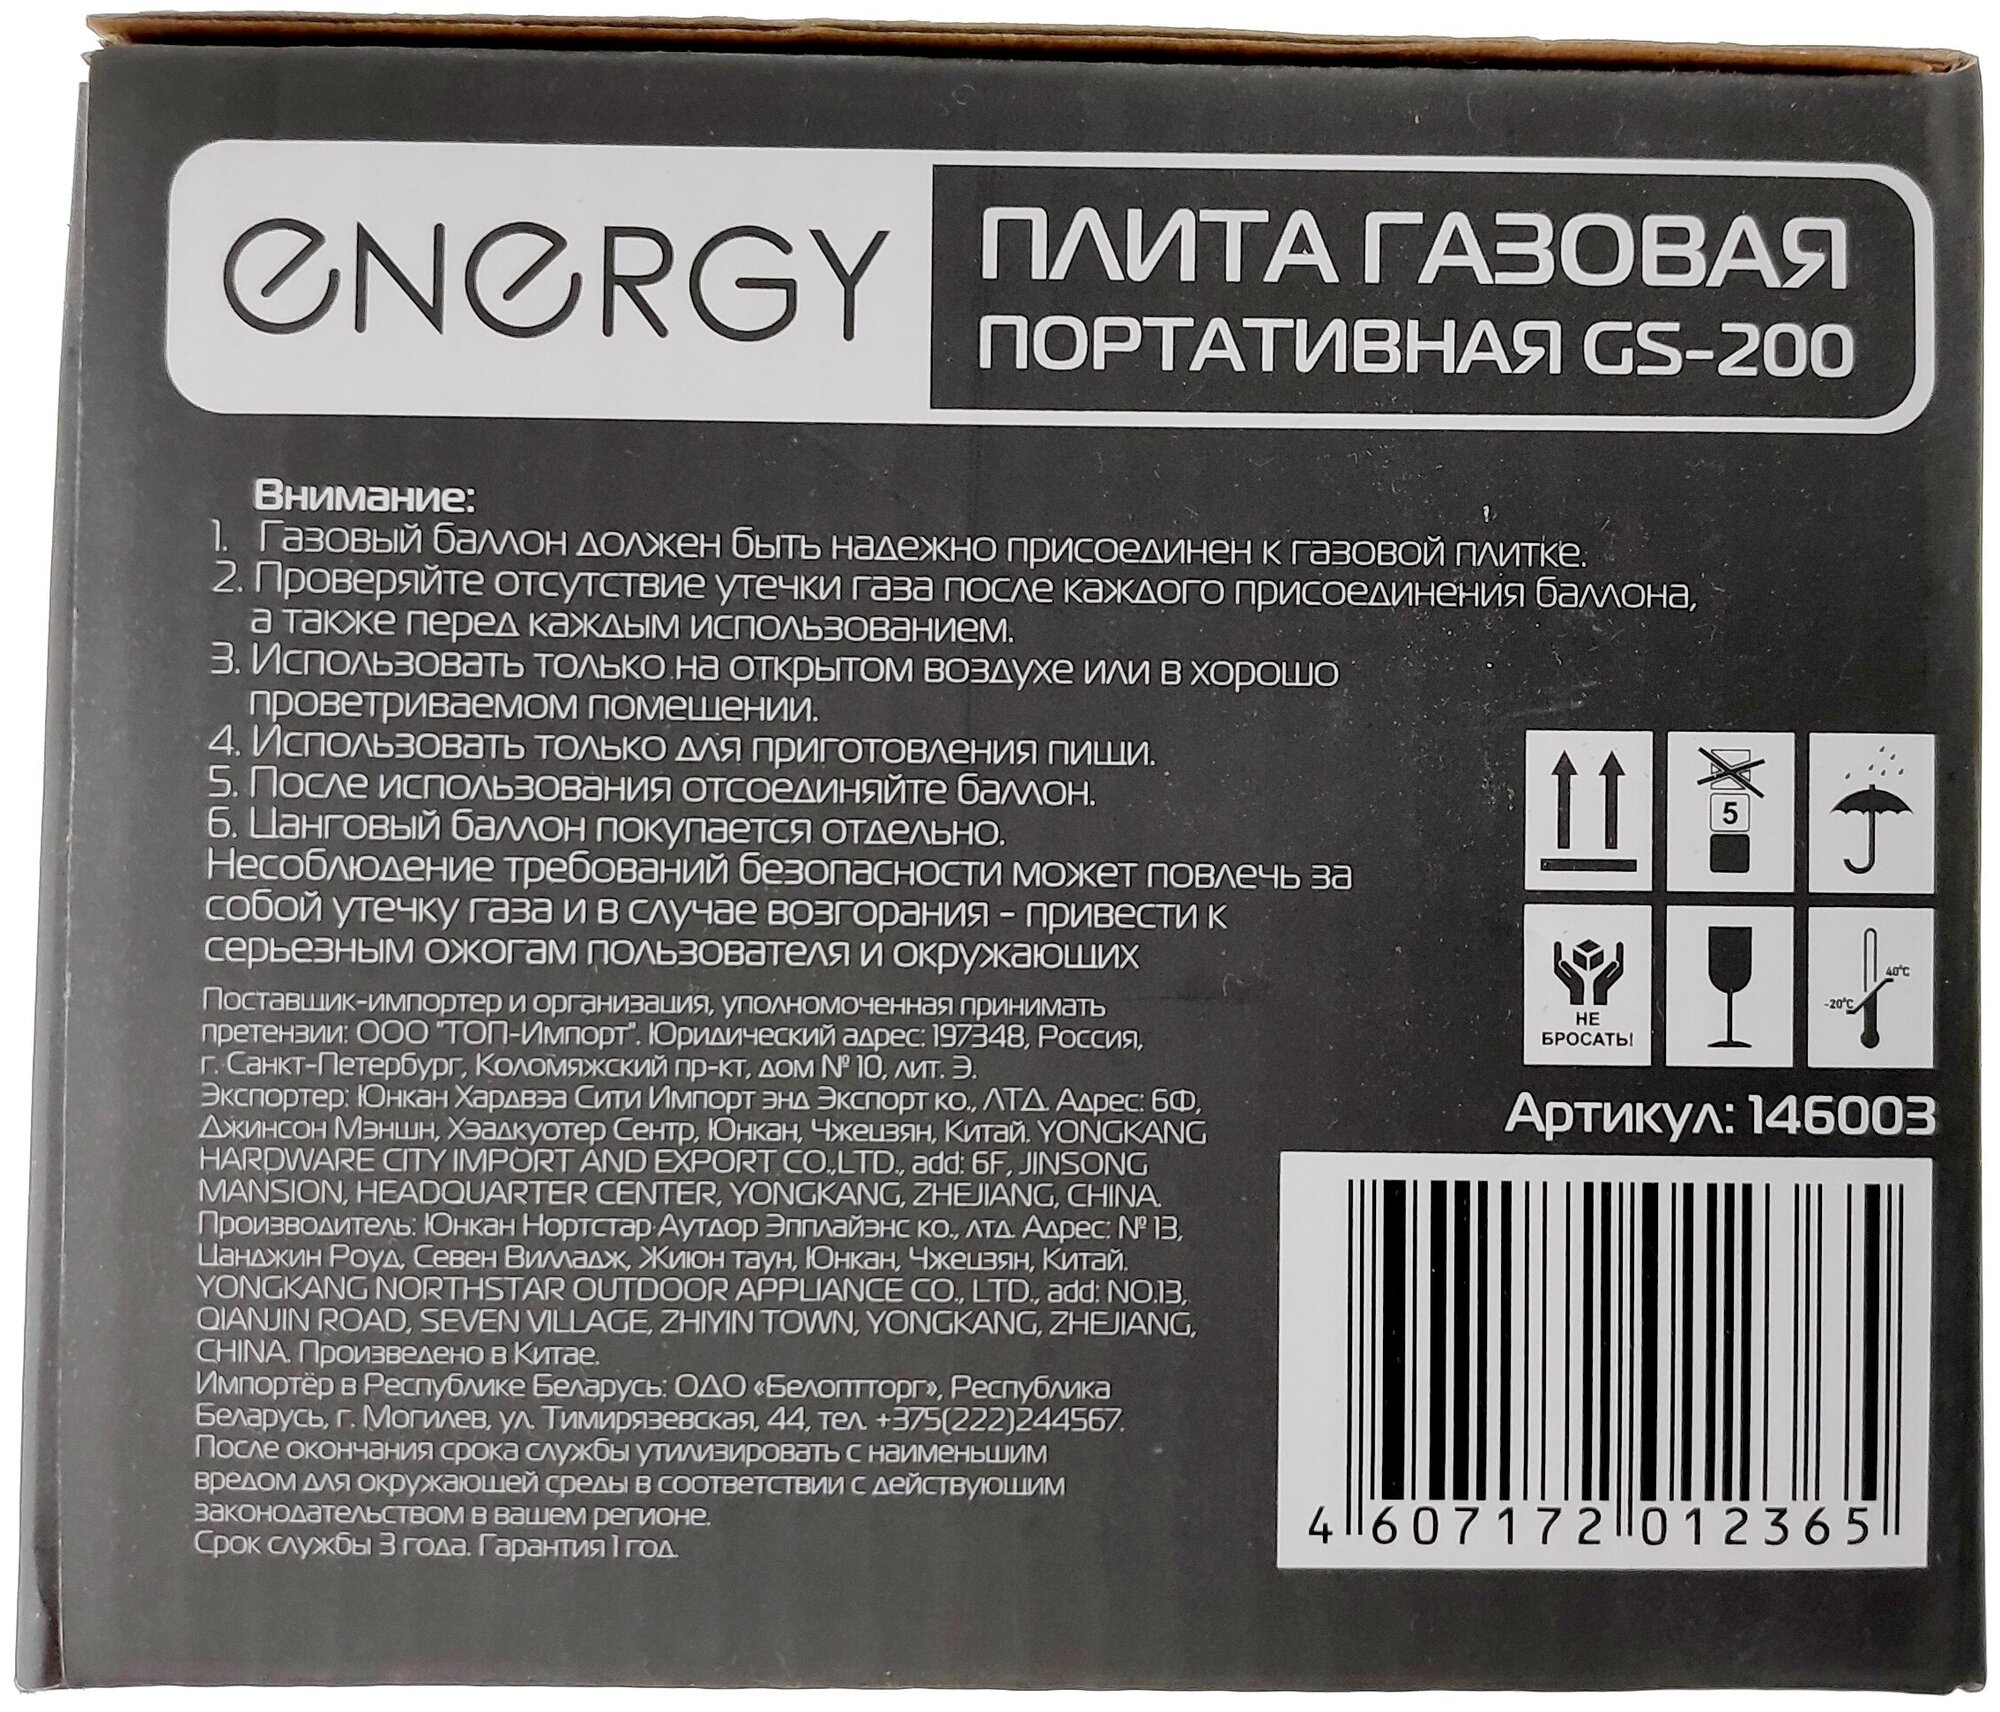 Настольная газовая плита Energy - фото №2